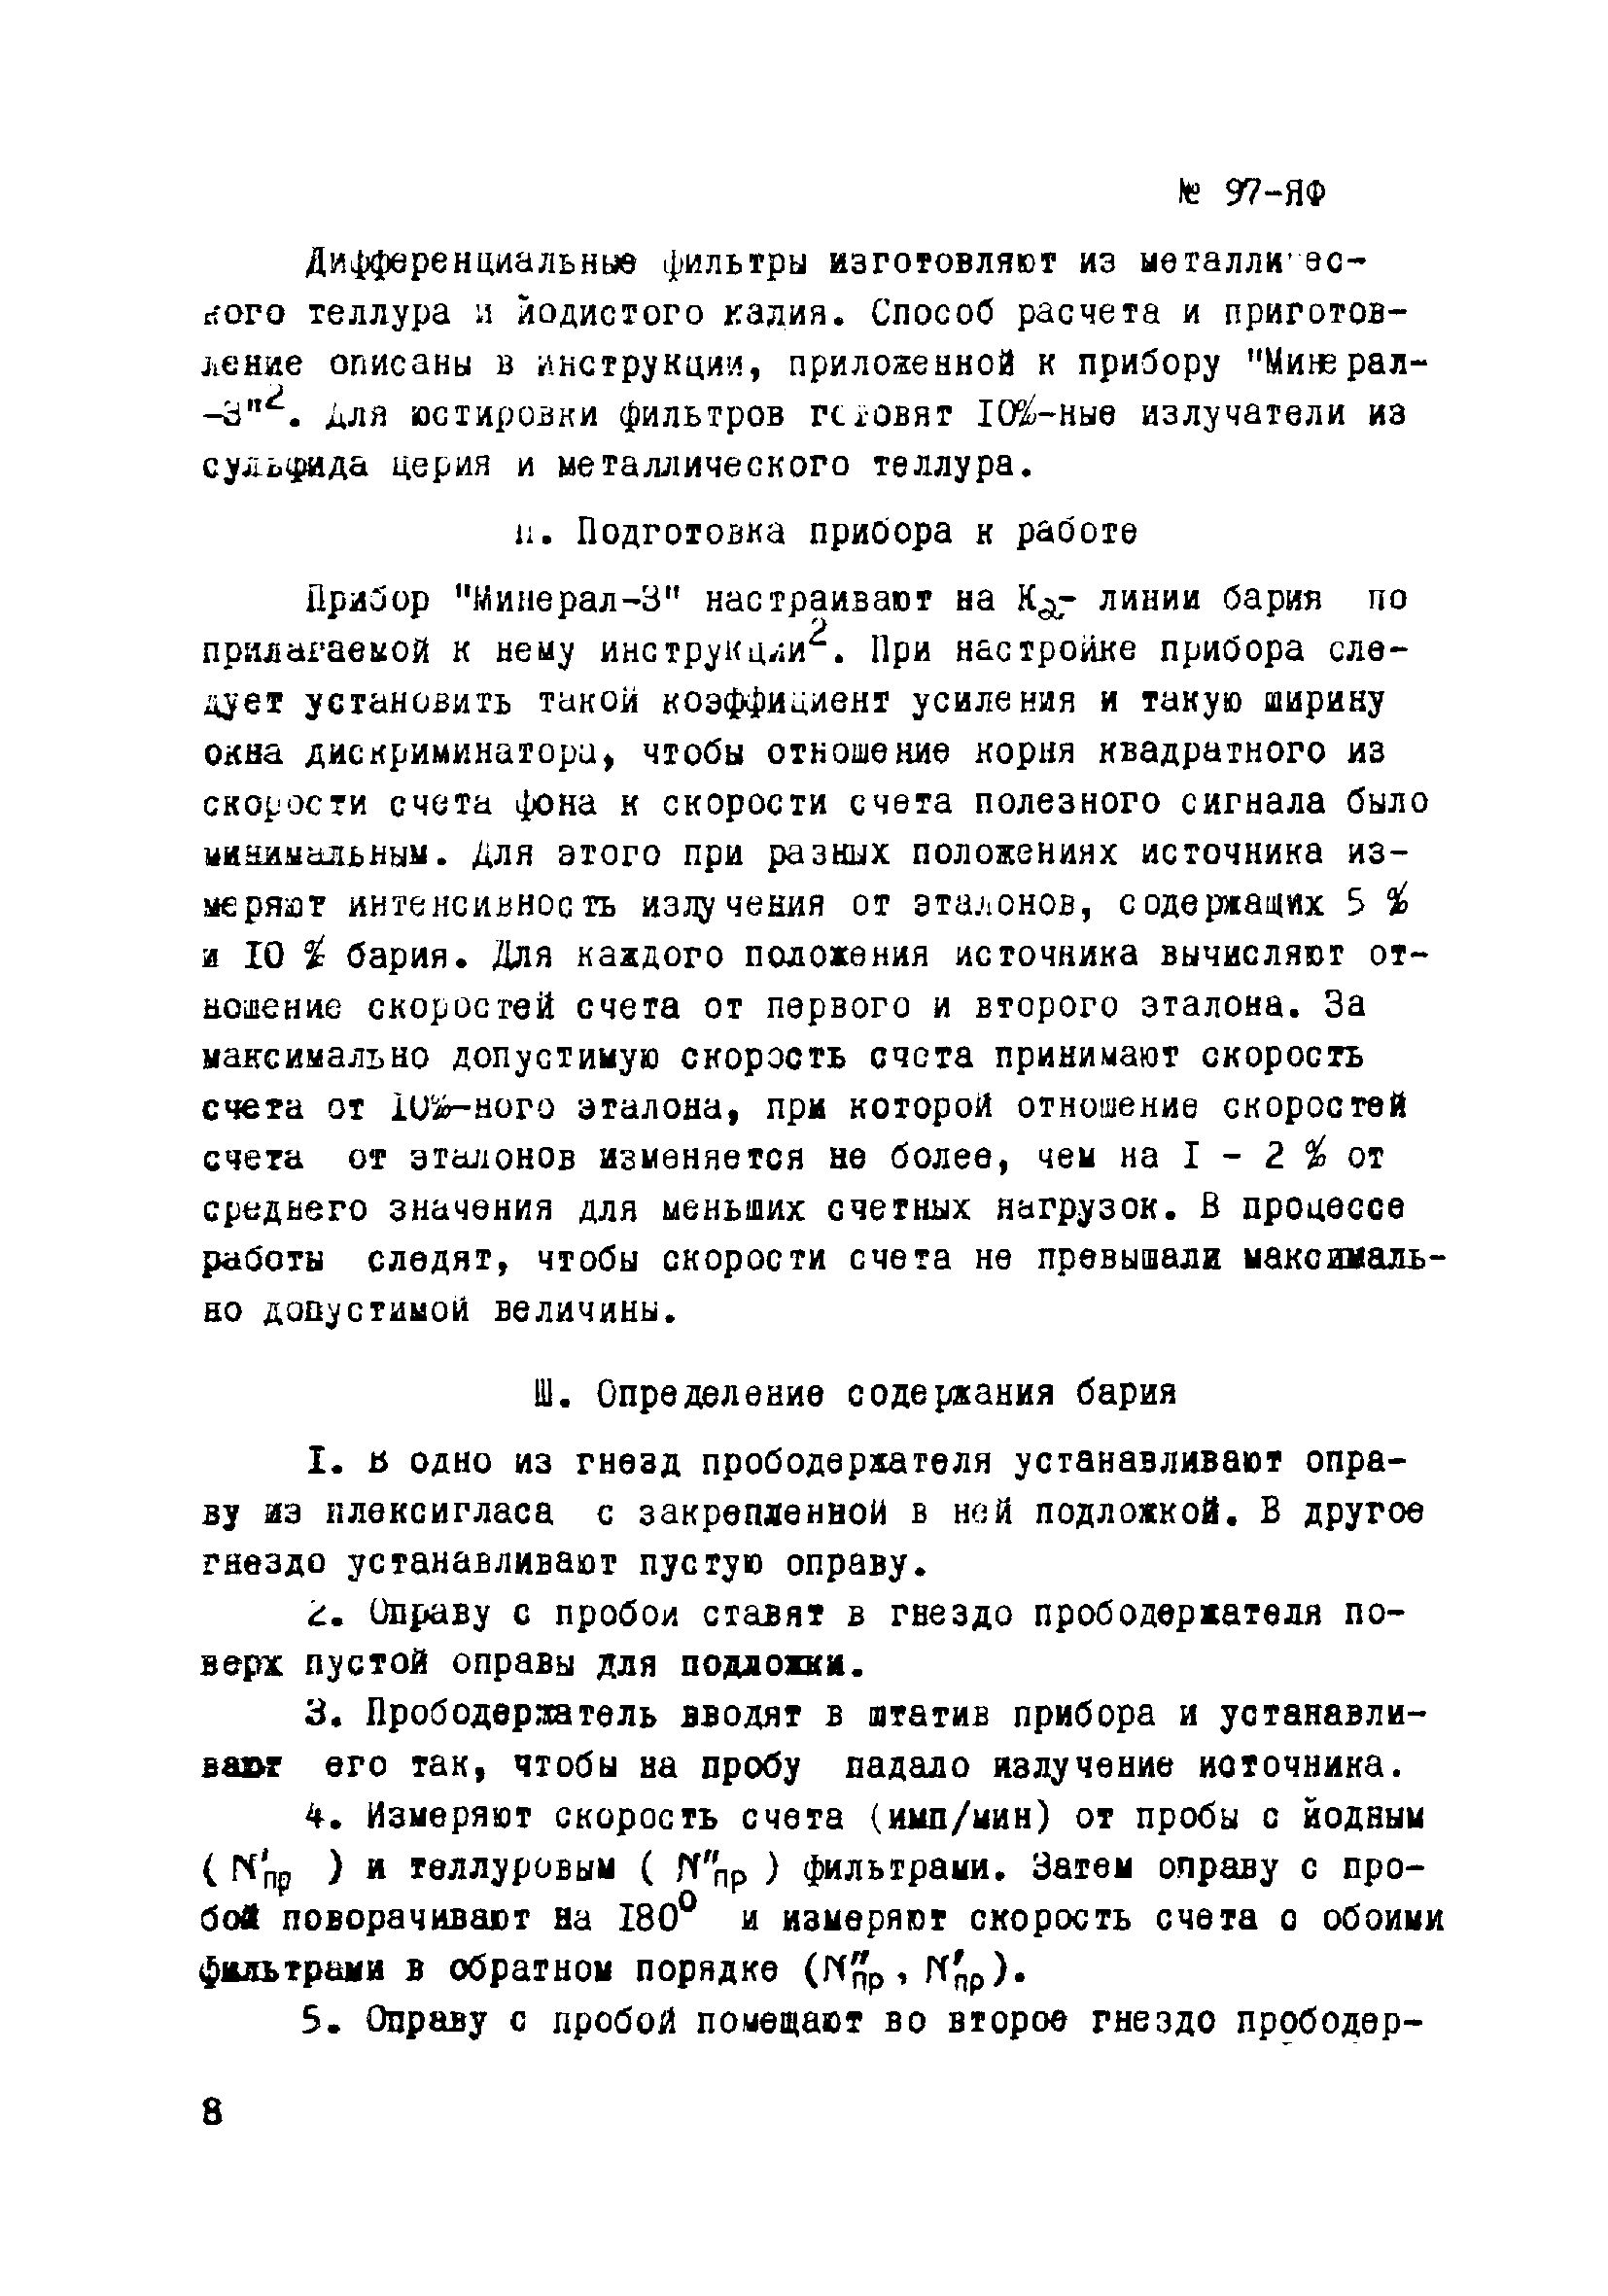 Инструкция НСАМ 97-ЯФ